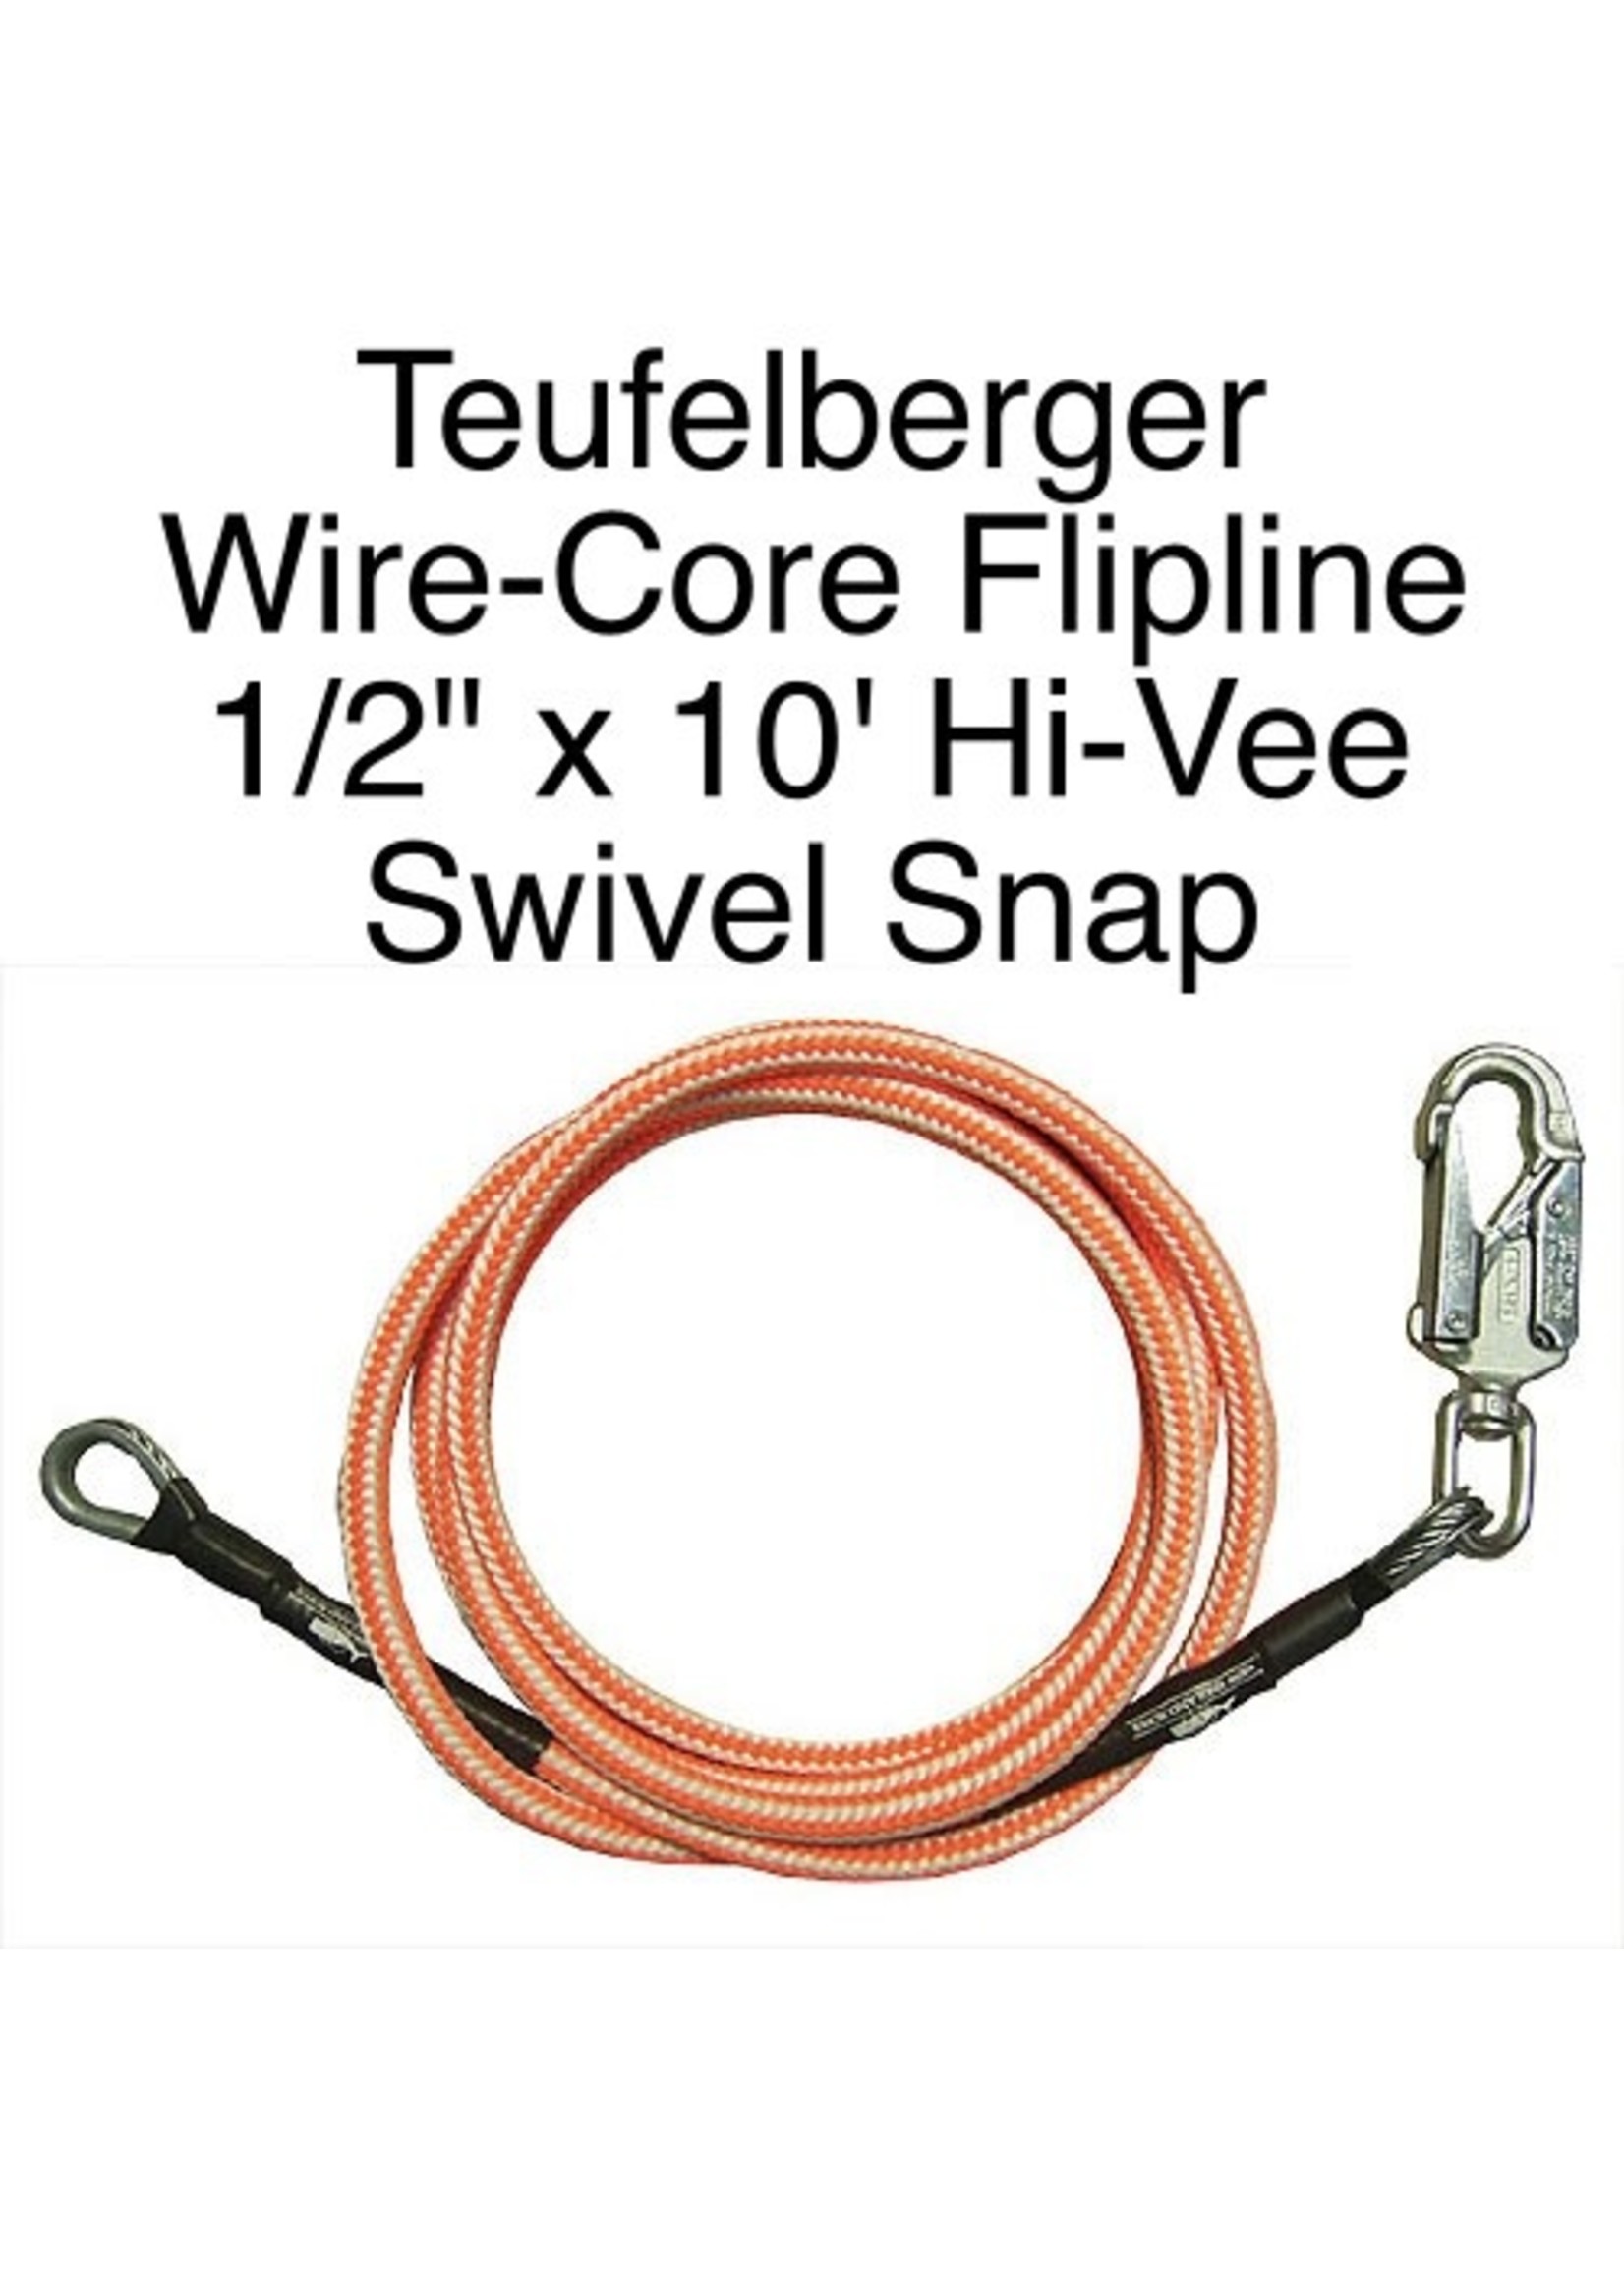 Teufelberger Flipline Hi-Vee 1/2" x 10' with Swivel Snap